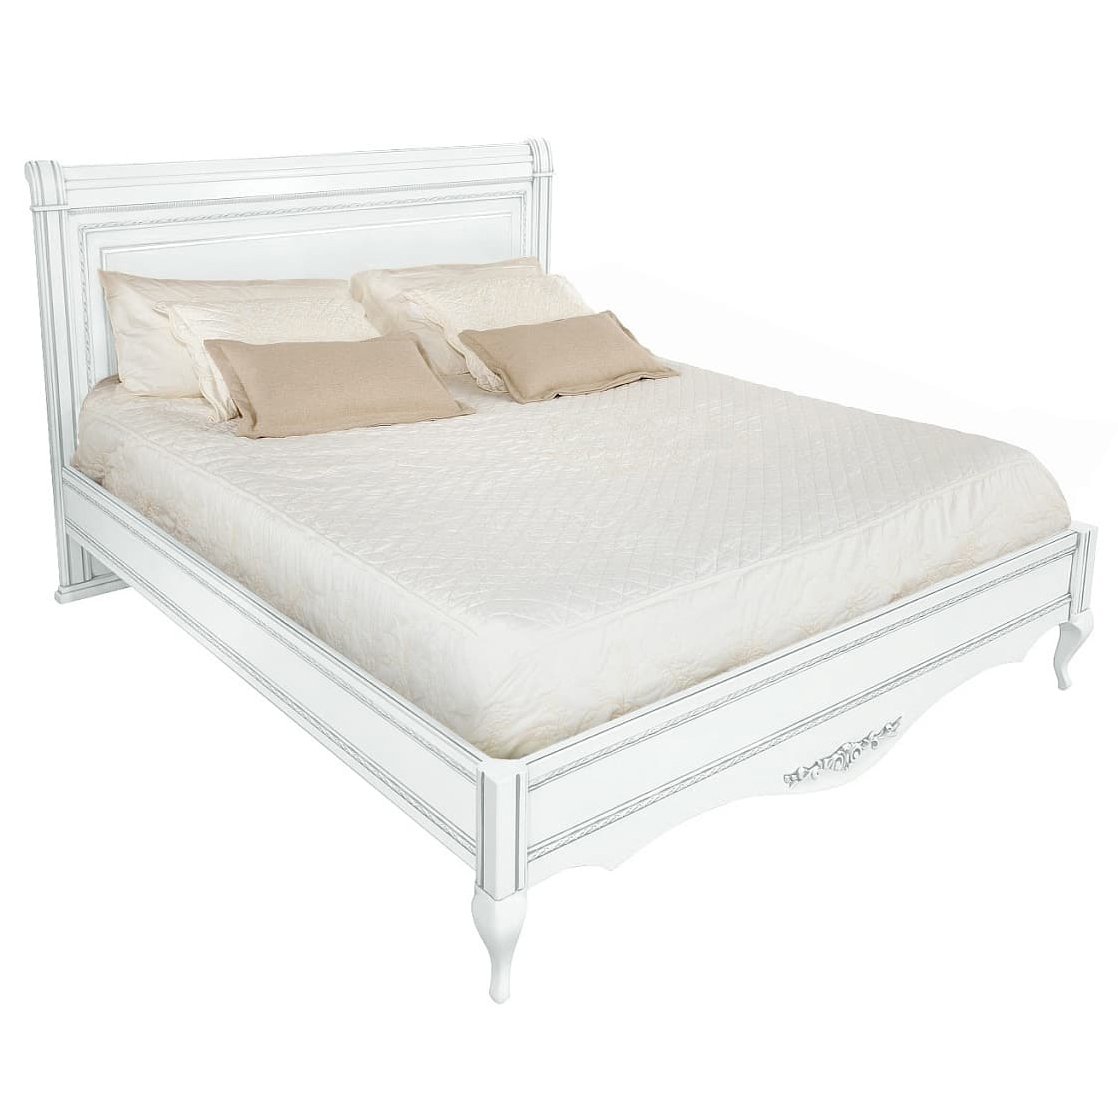 Кровать Timber Неаполь, двуспальная 180x200 см цвет: белый с серебром (T-538)T-538